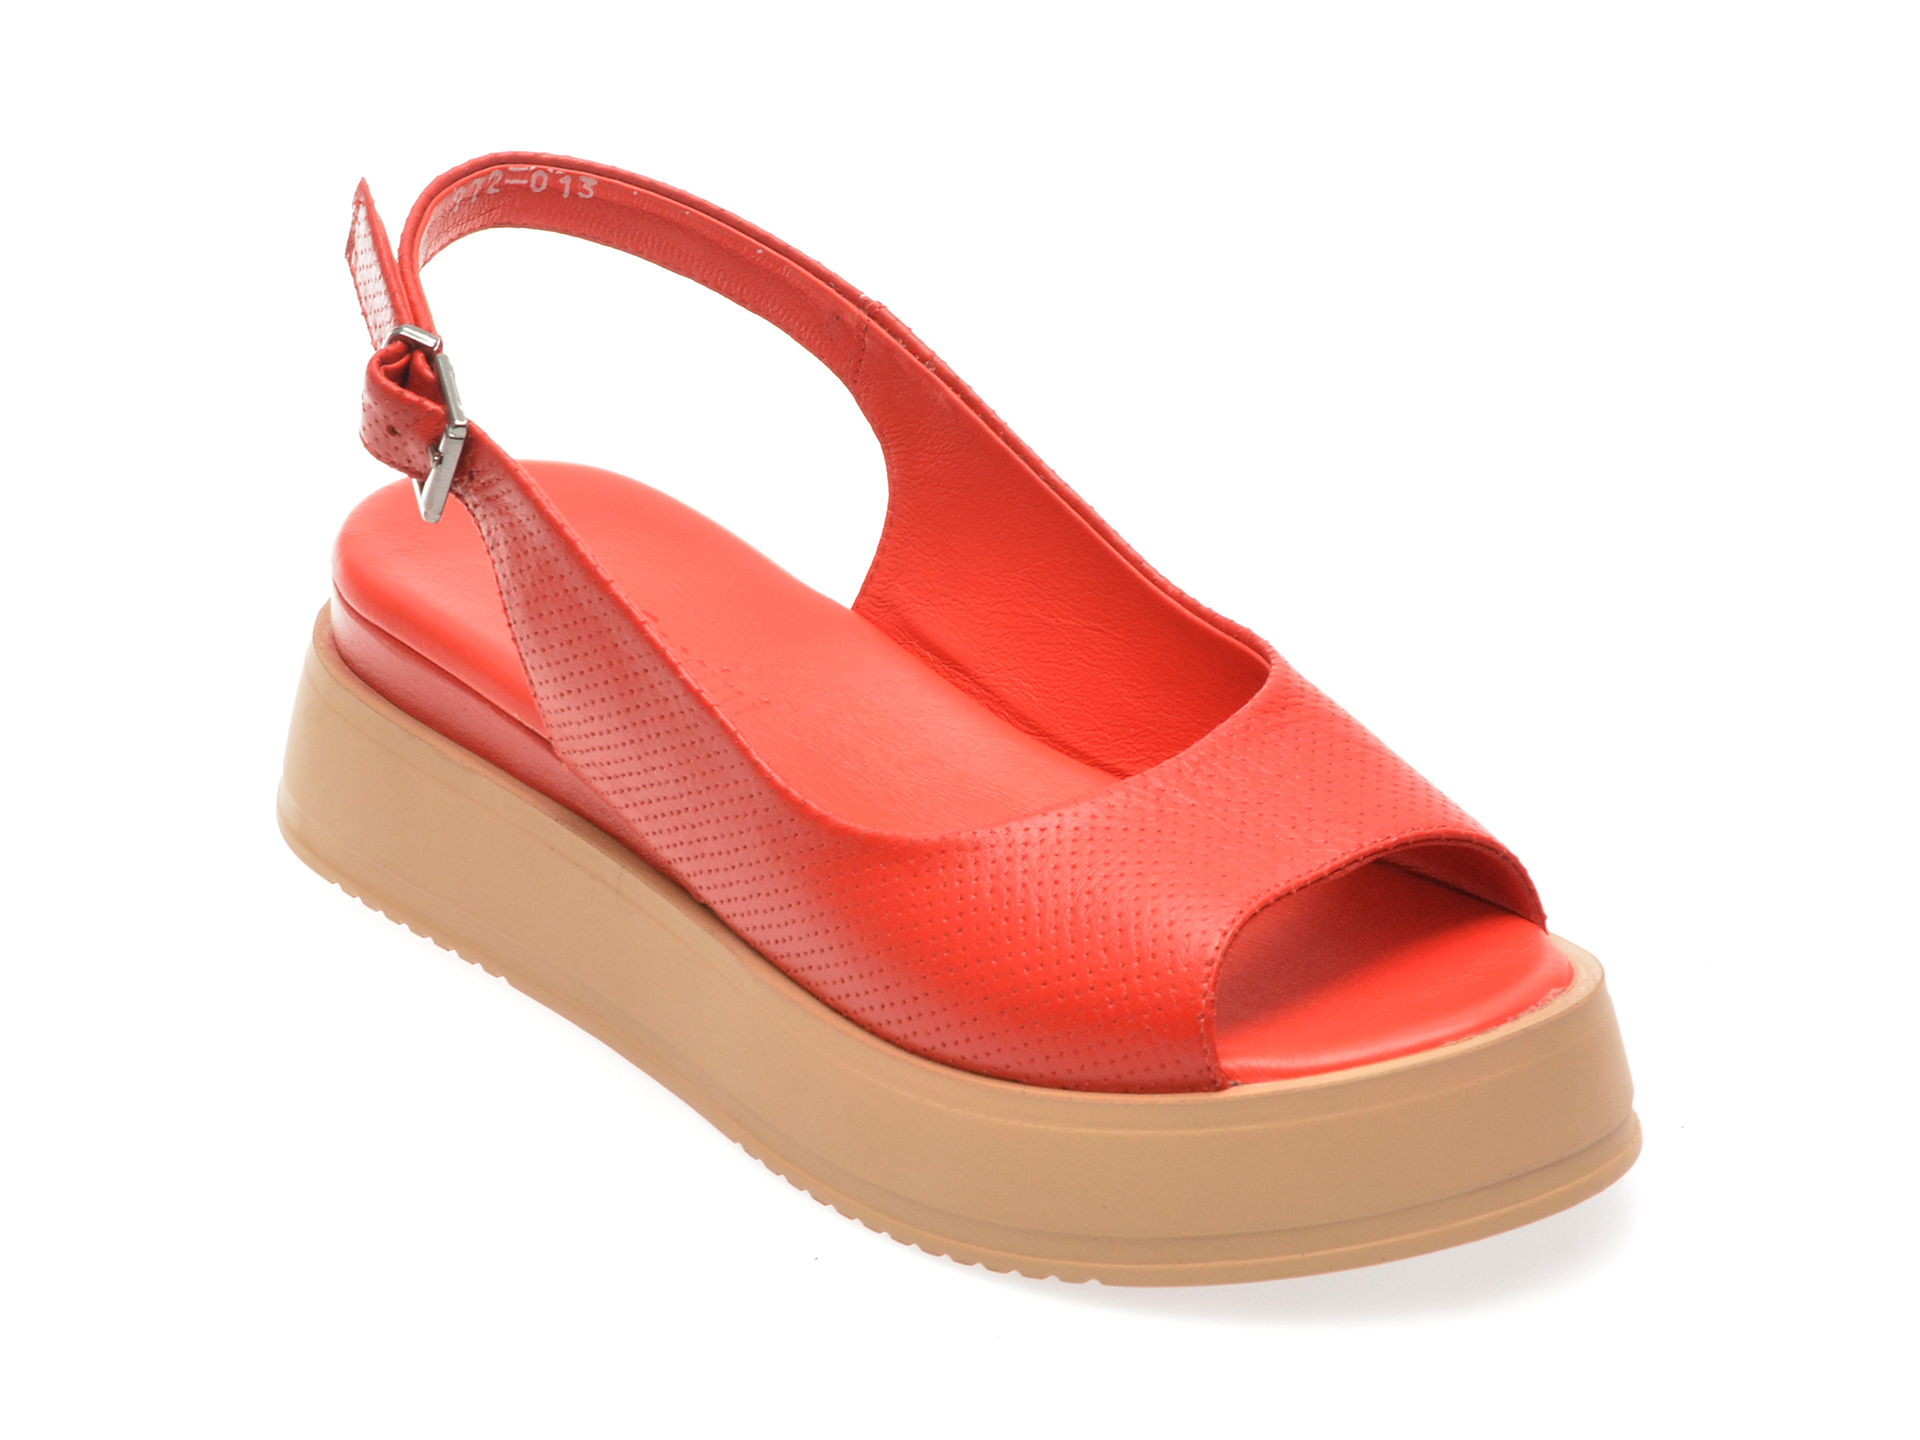 Sandale casual FLAVIA PASSINI rosii, 347972, din piele naturala